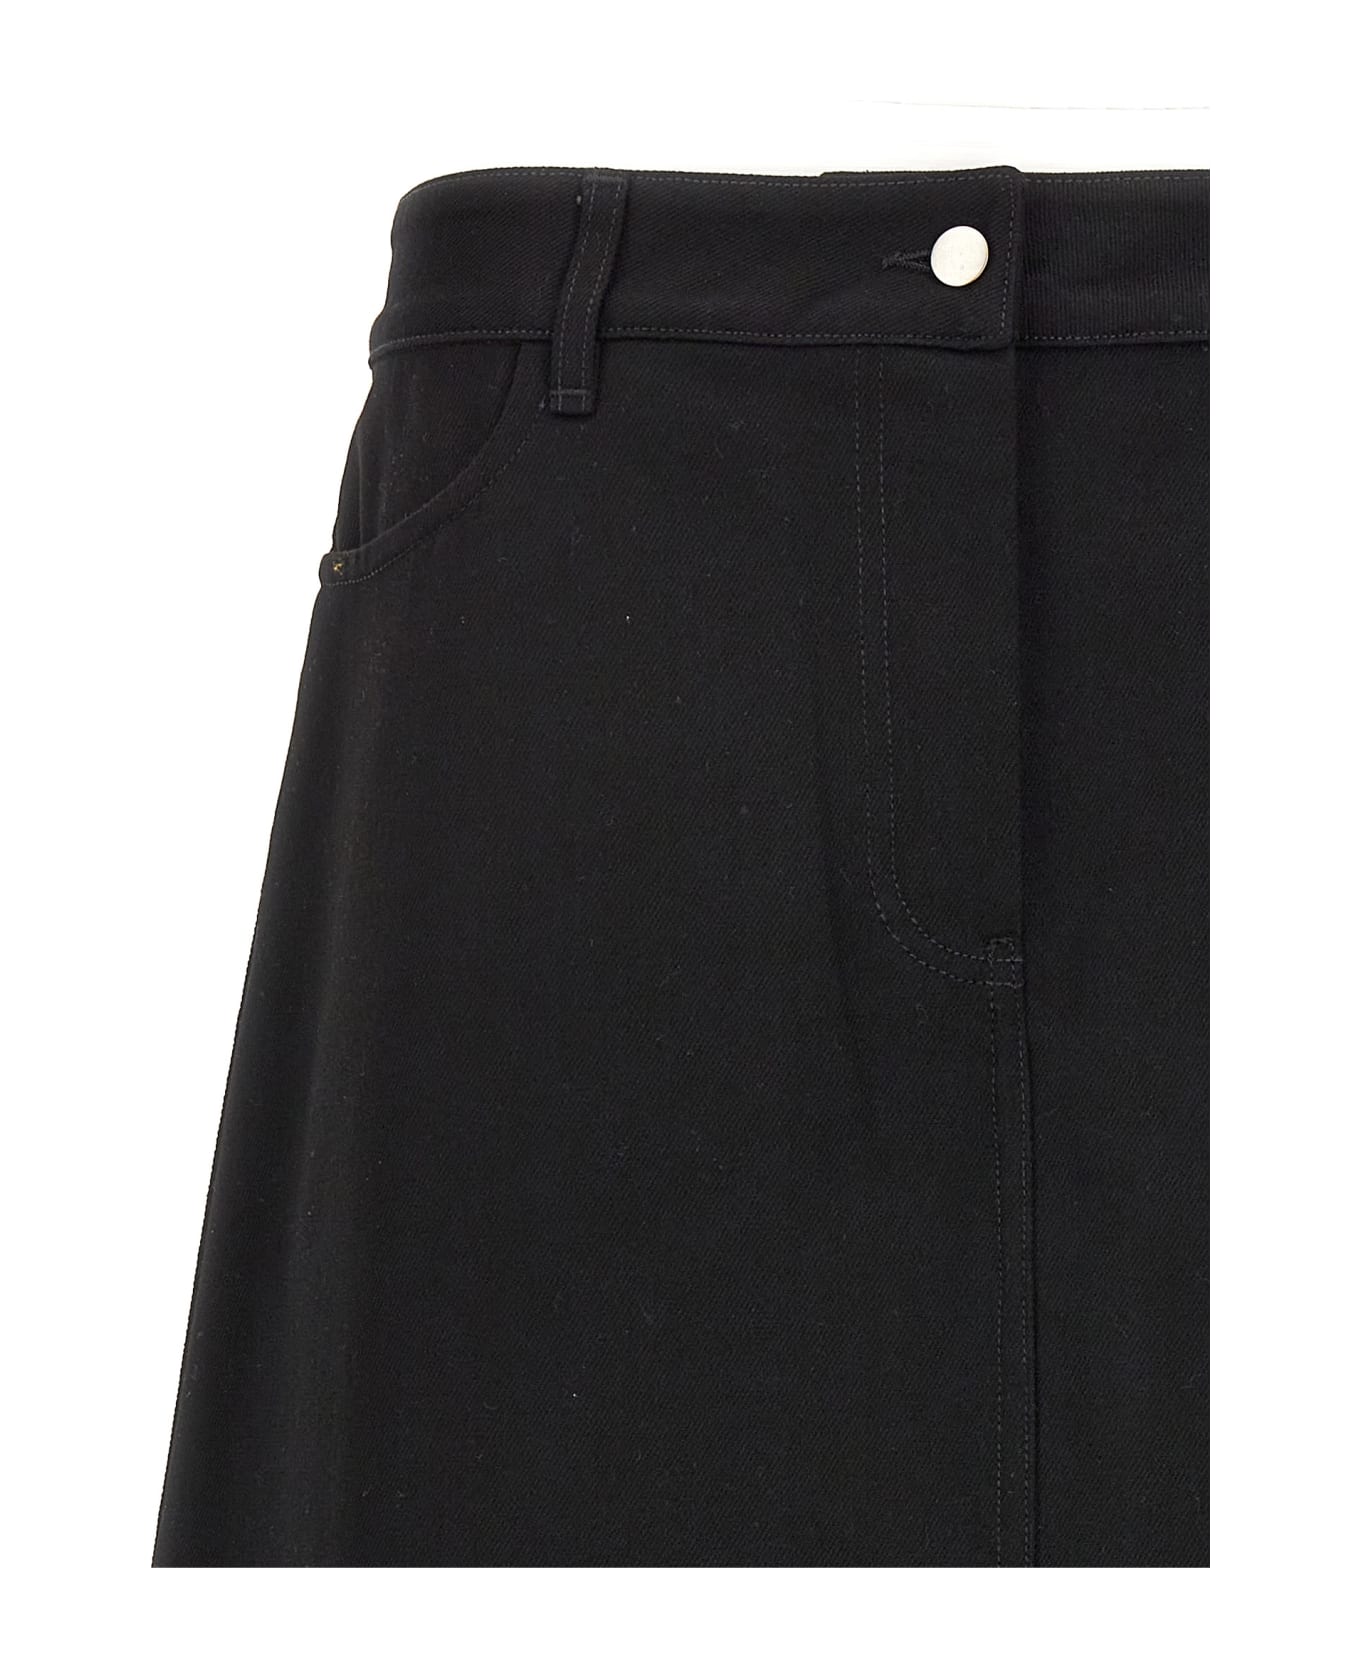 Studio Nicholson 'baringo' Midi Skirt - Black  